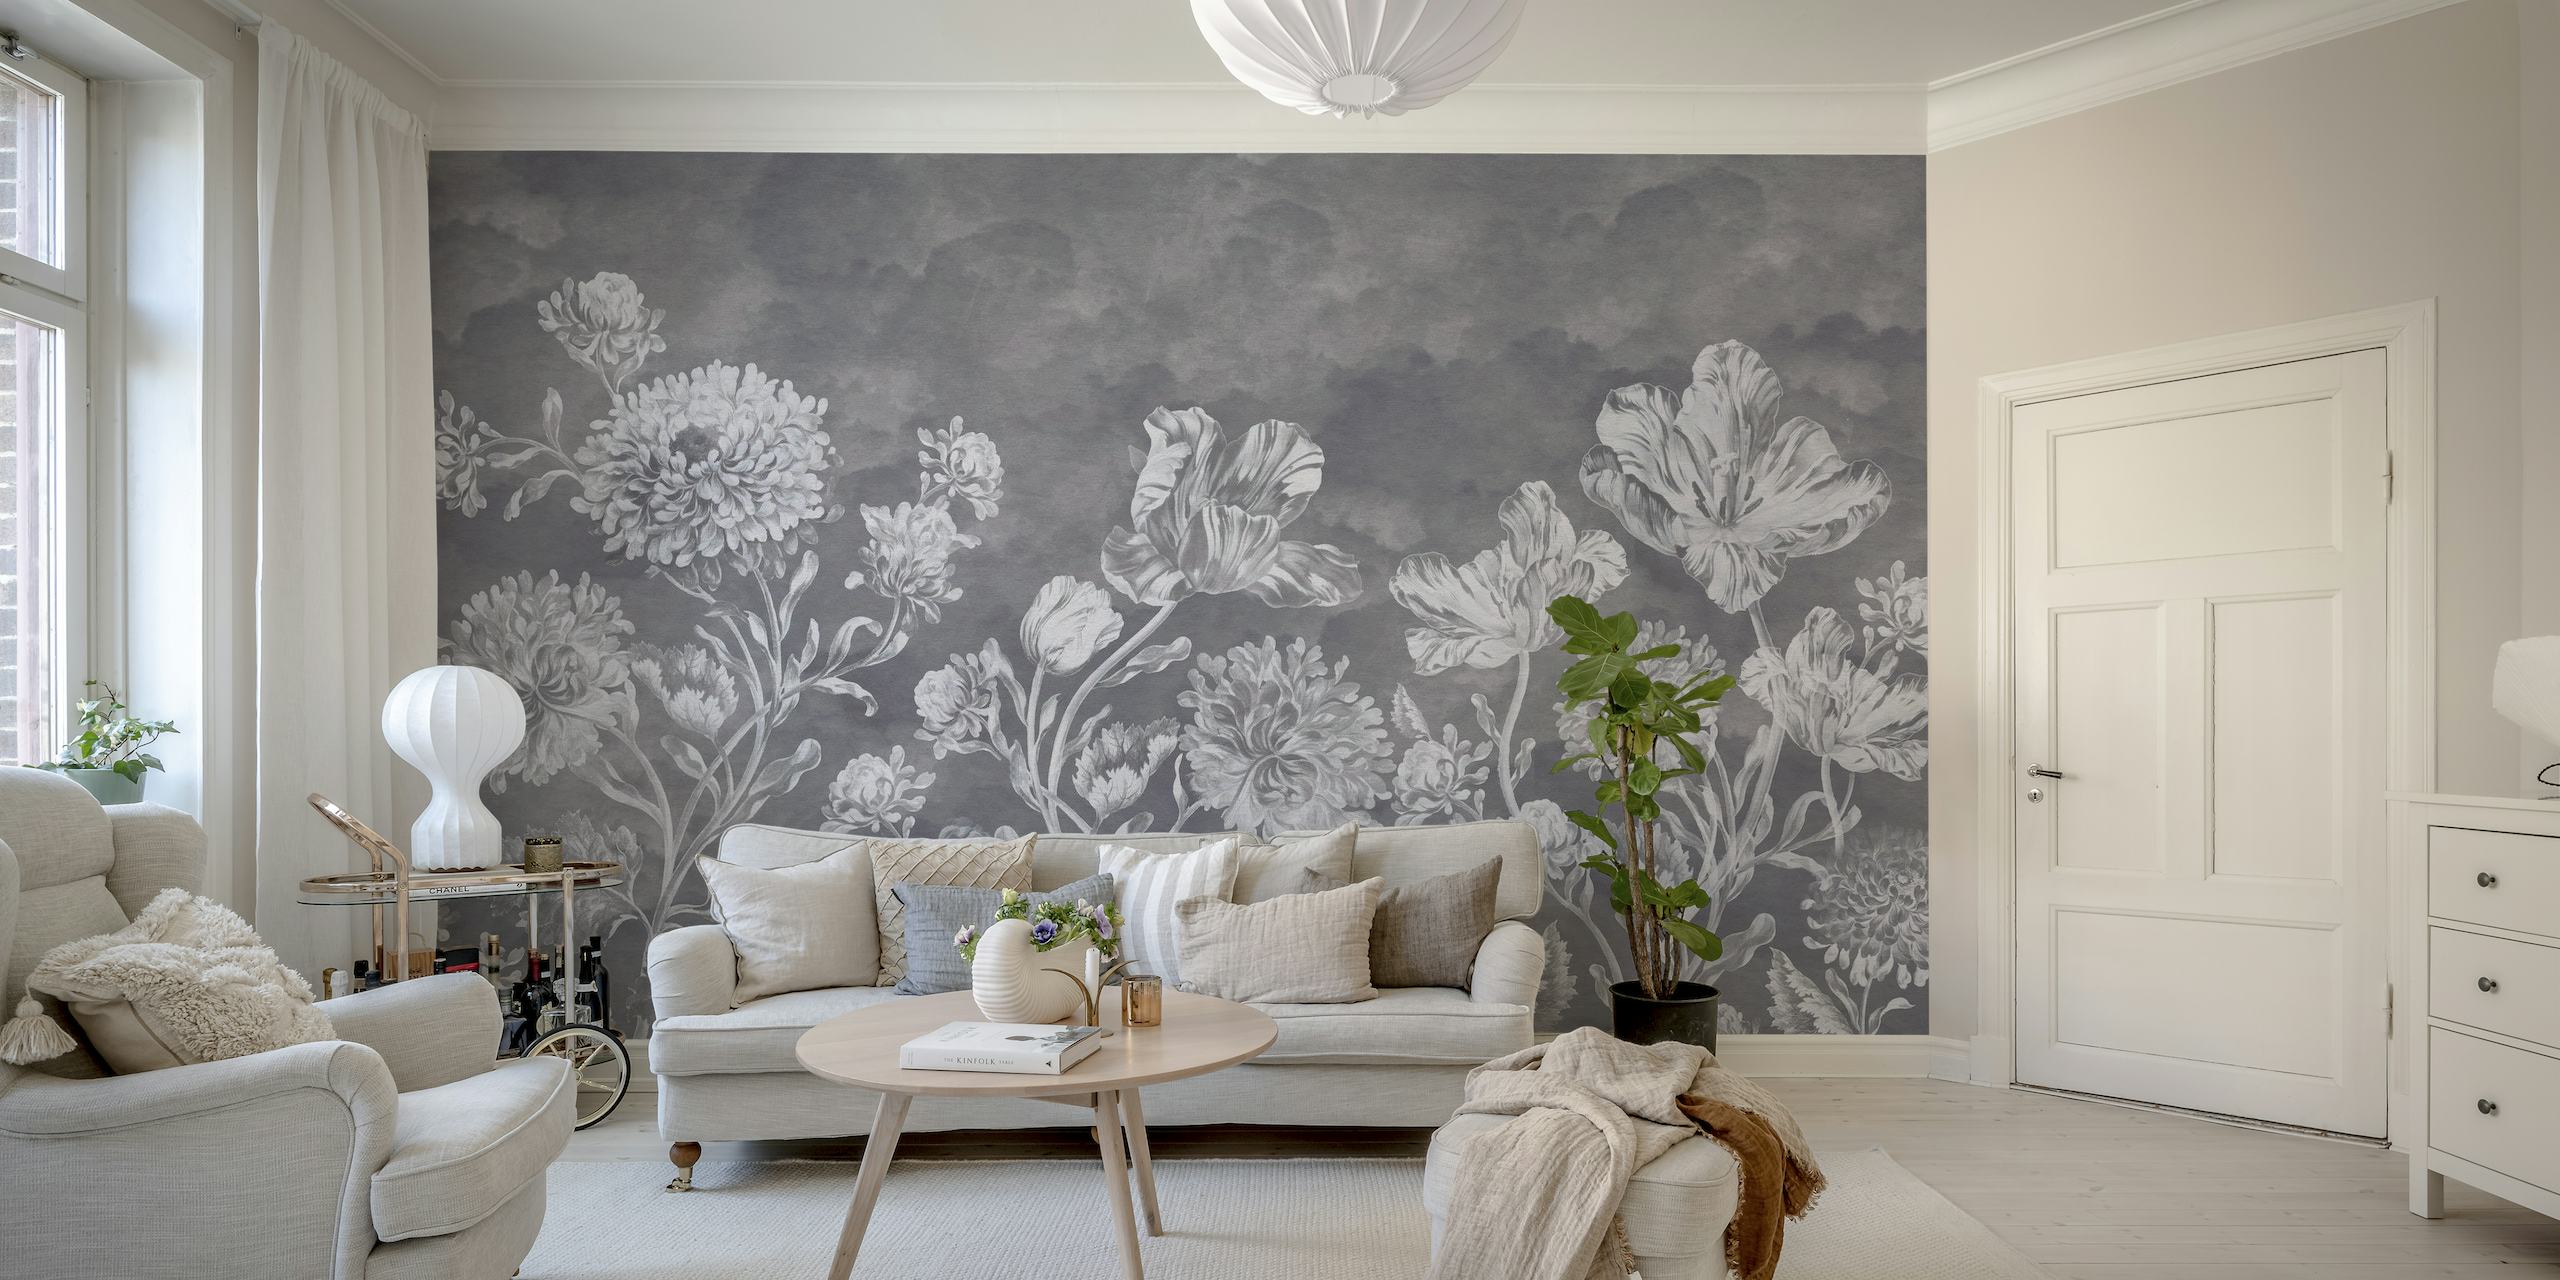 Tunnelmallinen tumma barokkityylinen kukkainen seinämaalaus, jossa on monimutkaisia kukkakuvioita harmaasävyissä